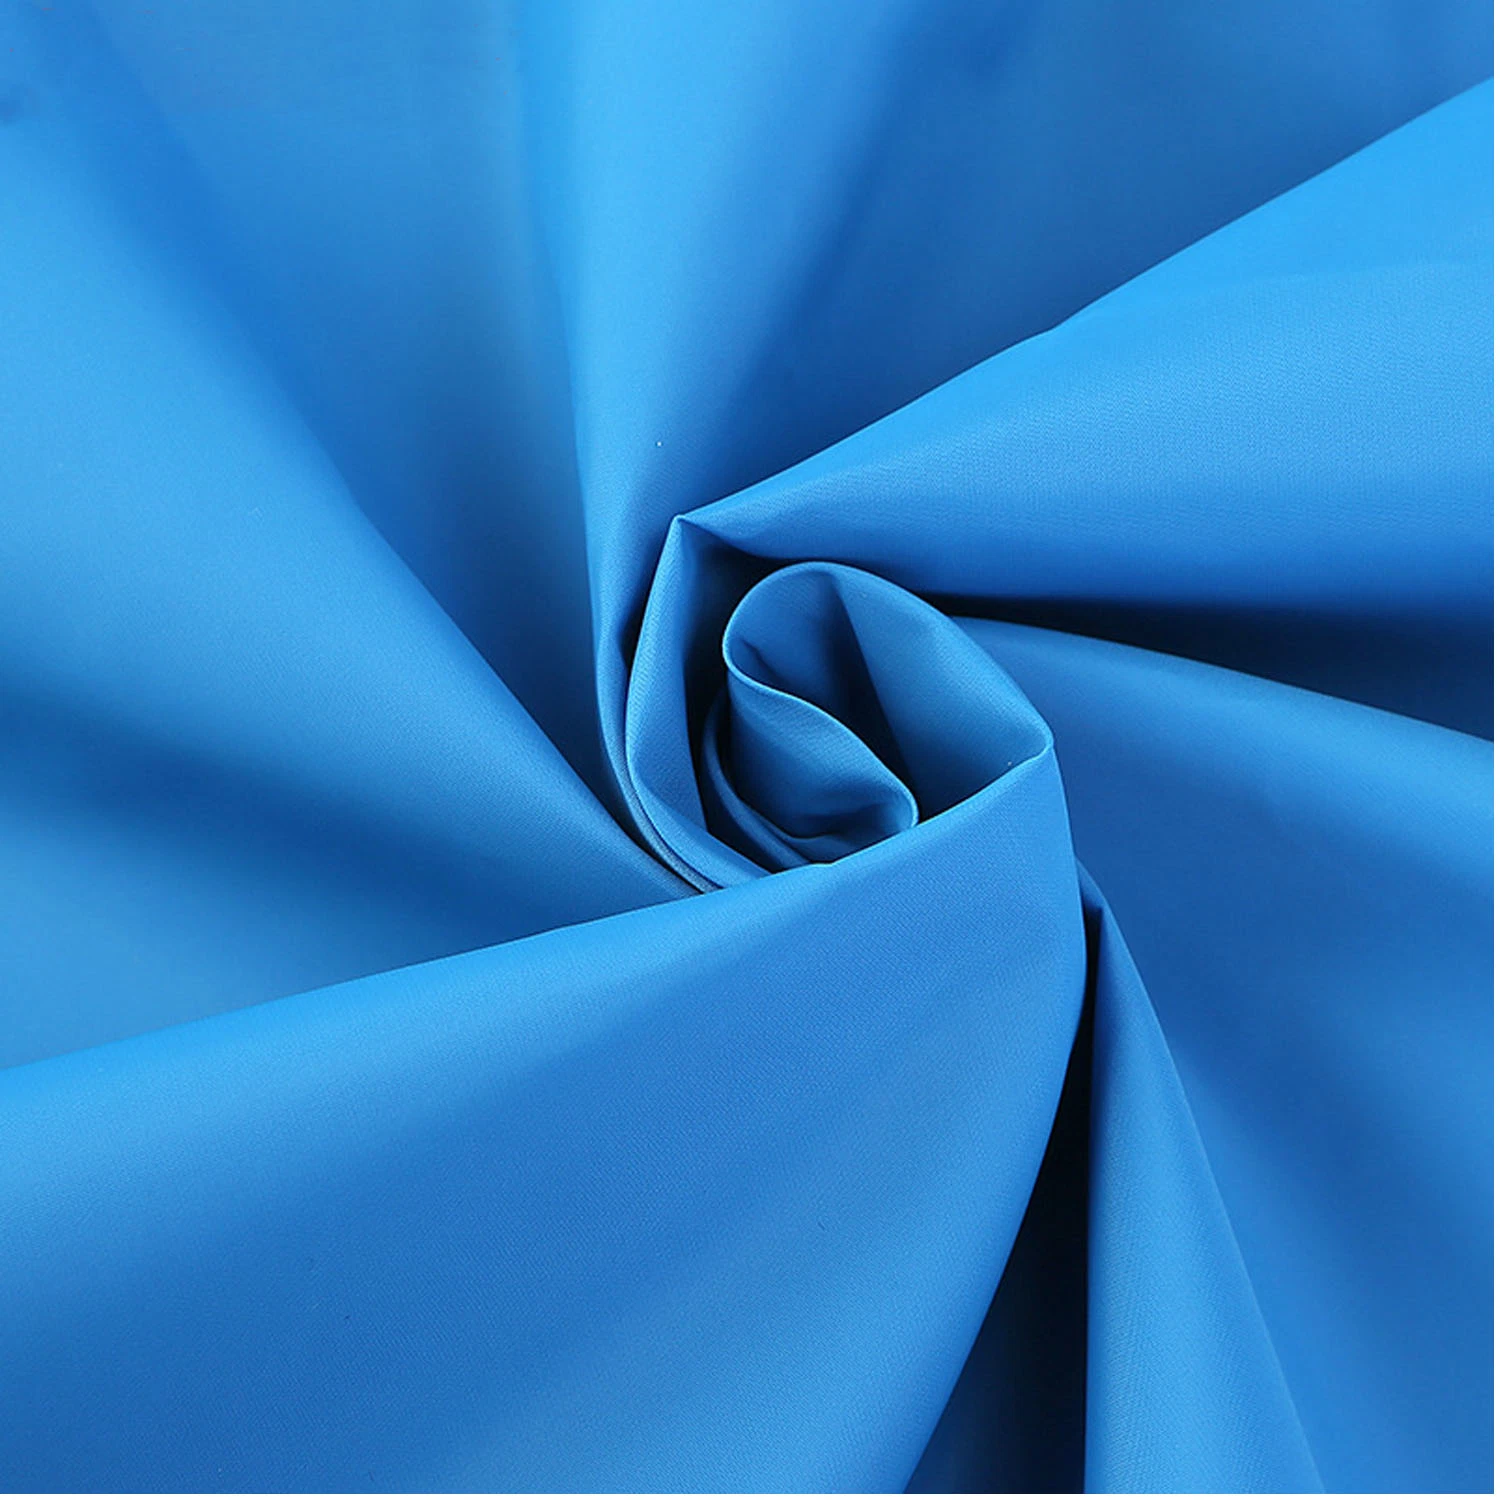 Textile Nylon Spandex Stretch Power Fabric for Sportswear/Bikini/Swim Wear